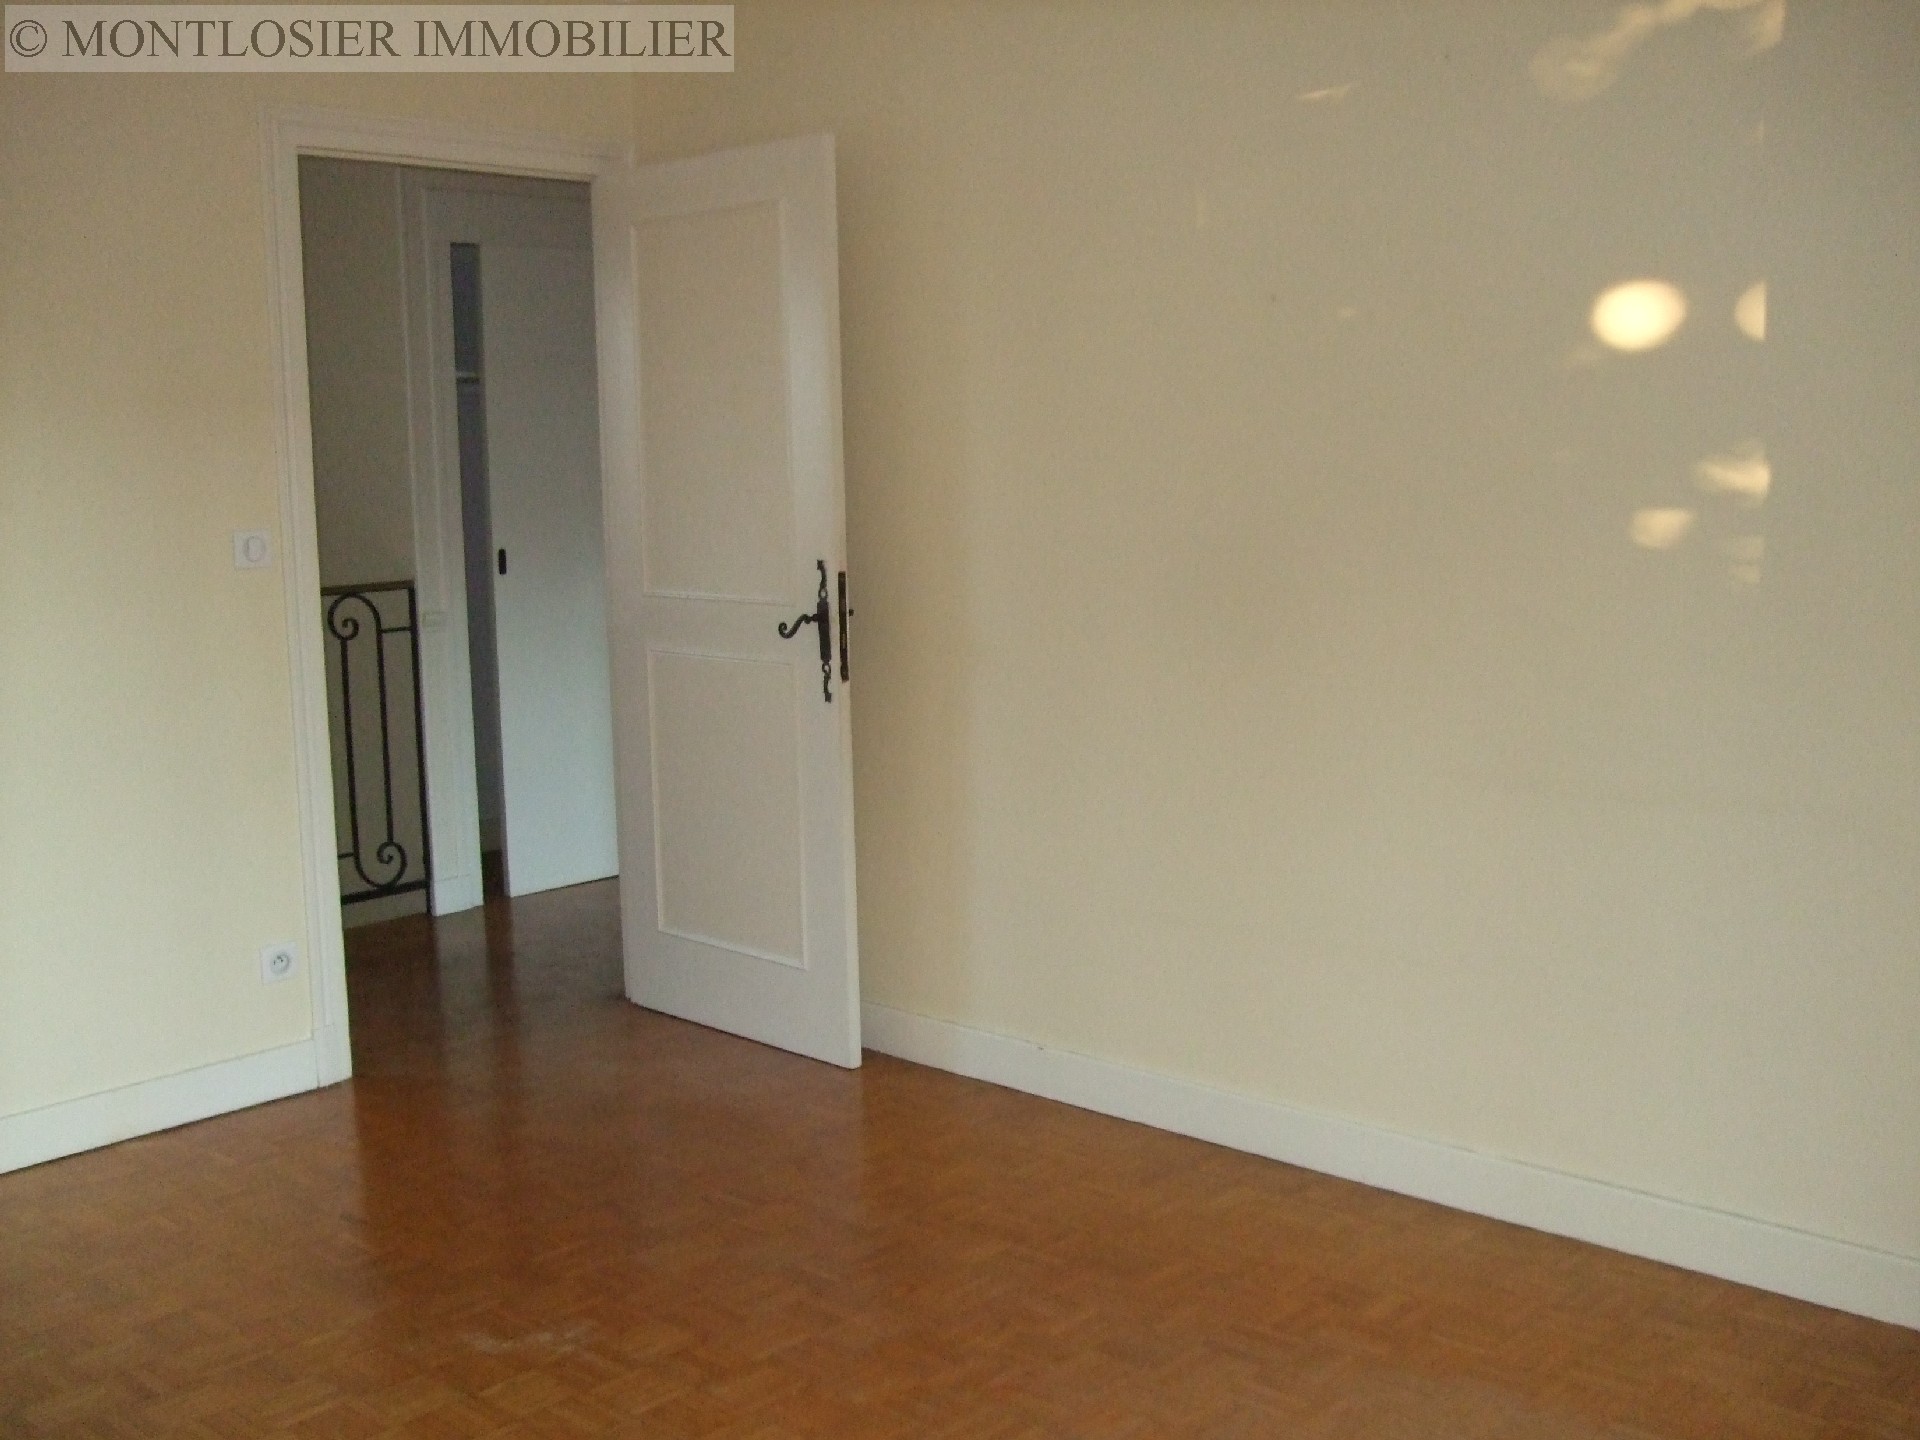 Maison à vendre, AIGUEPERSE, 168 m², 6 pièces